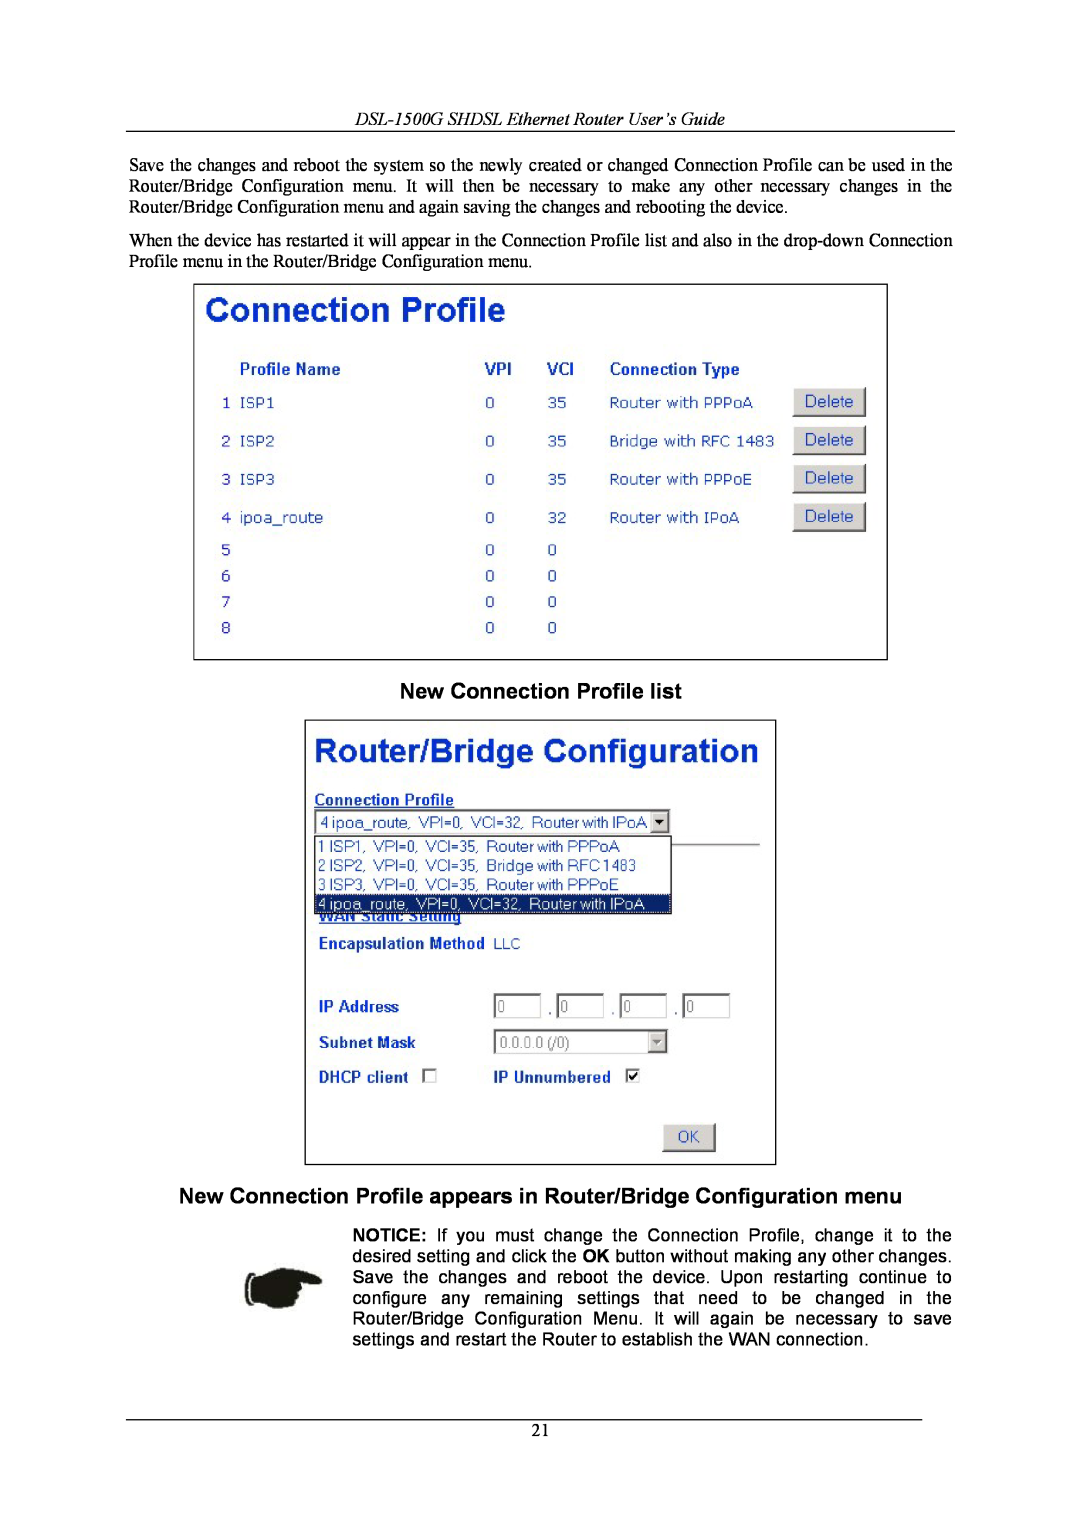 D-Link DSL-1500G manual New Connection Profile list, New Connection Profile appears in Router/Bridge Configuration menu 